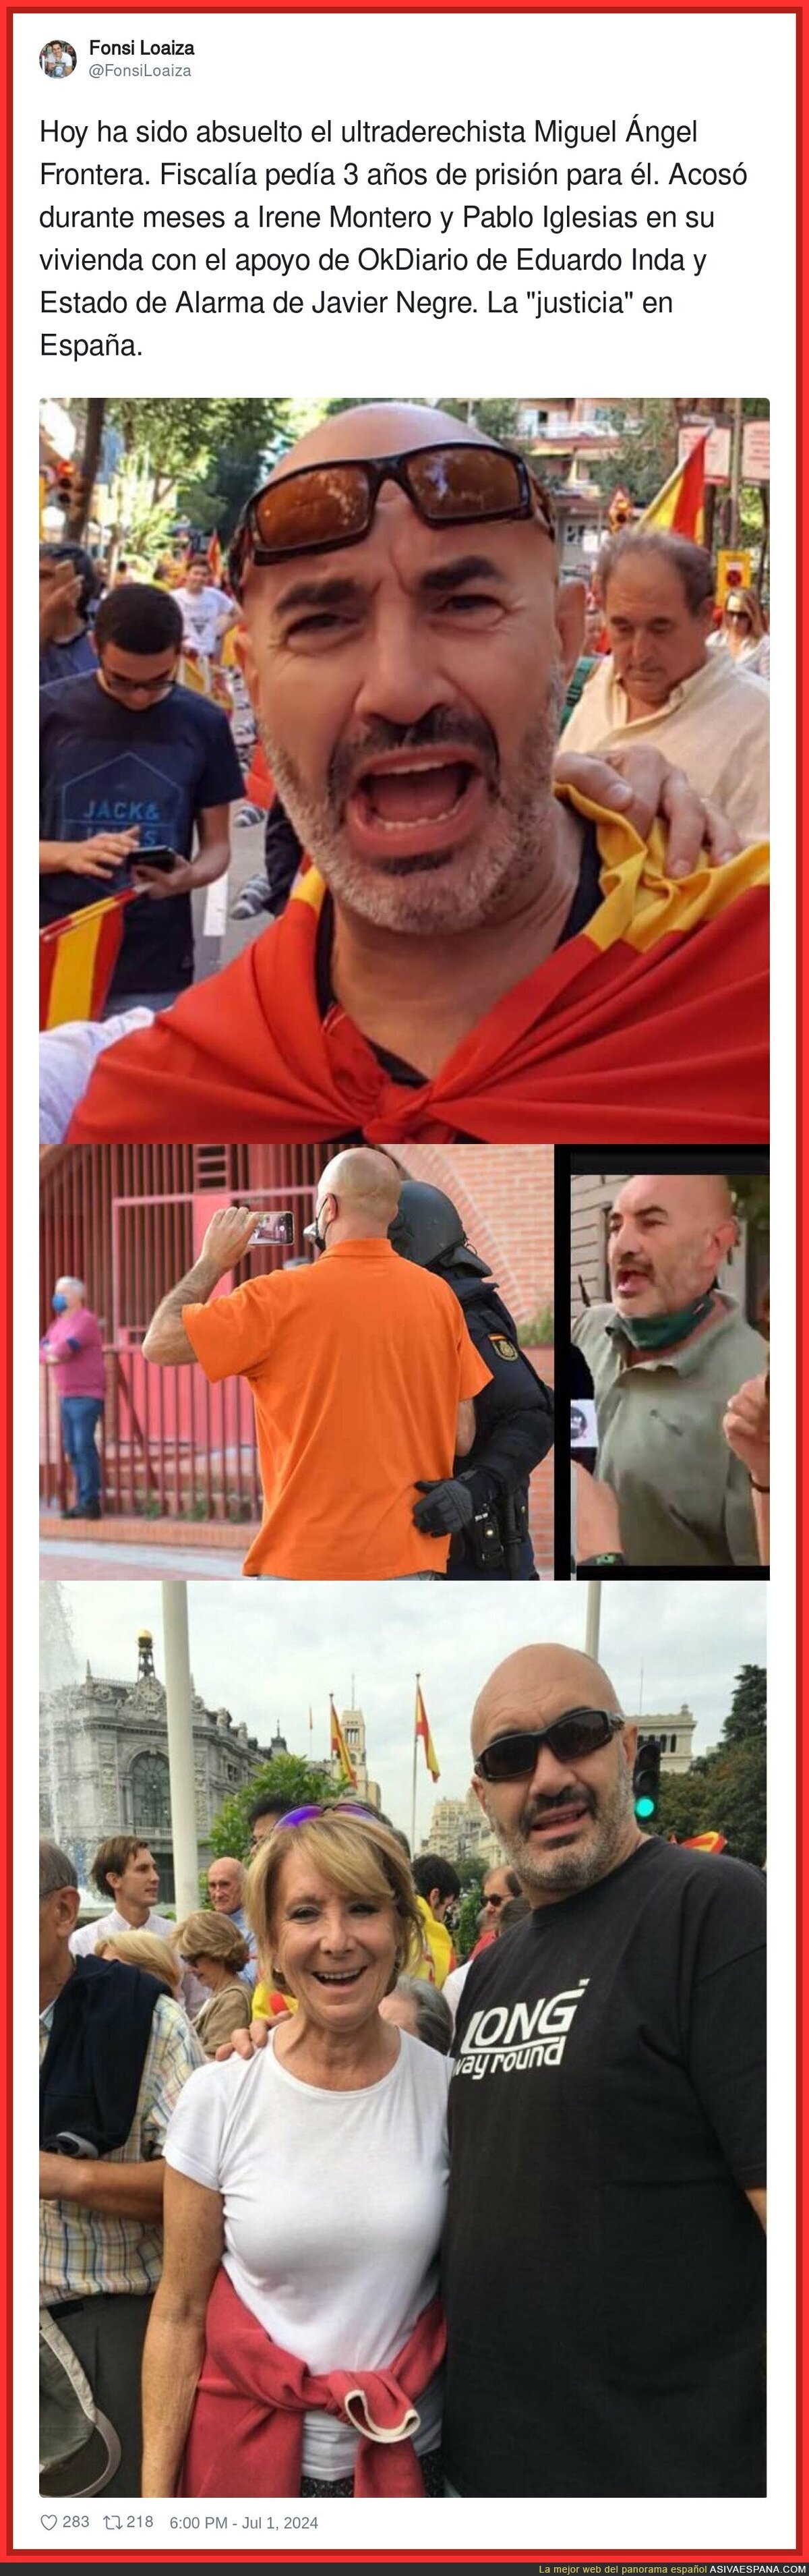 Así es la justicia en España